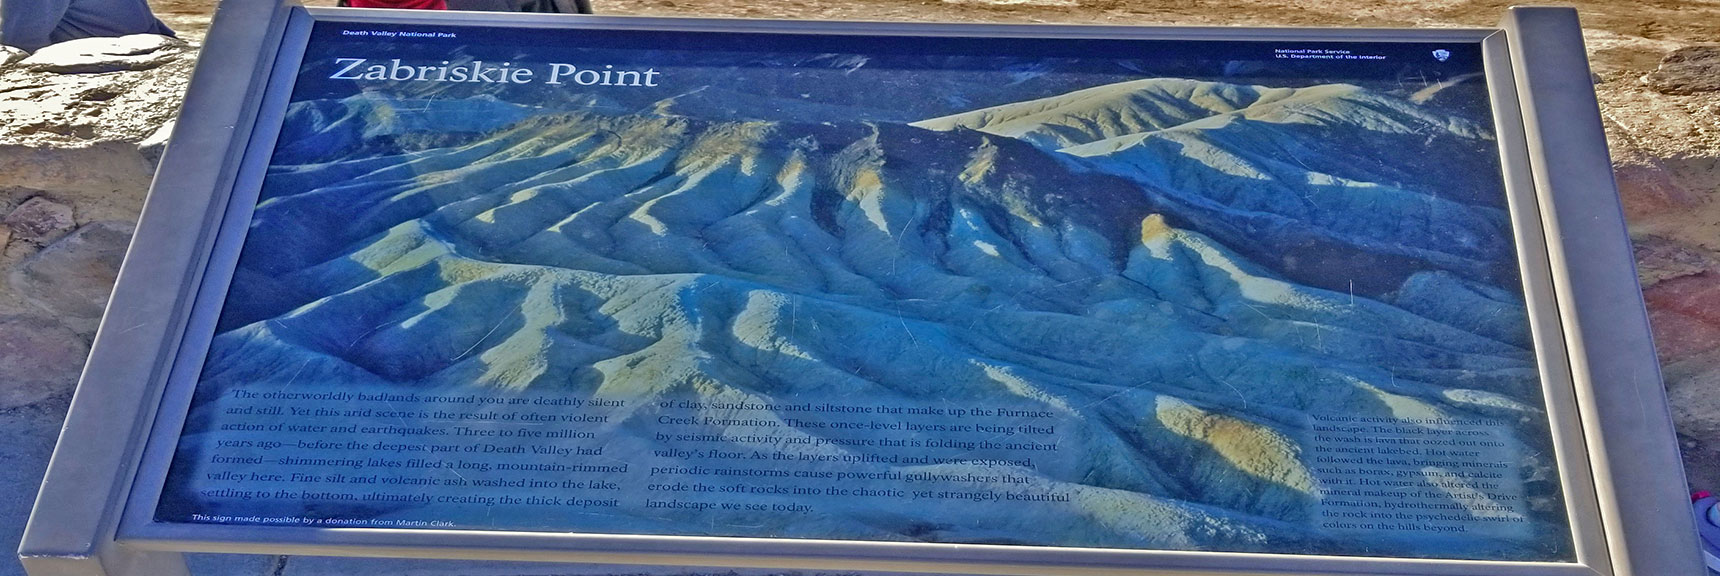 Zabriskie Point Interpretive Sign | Golden Canyon to Zabriskie Point | Death Valley National Park, California